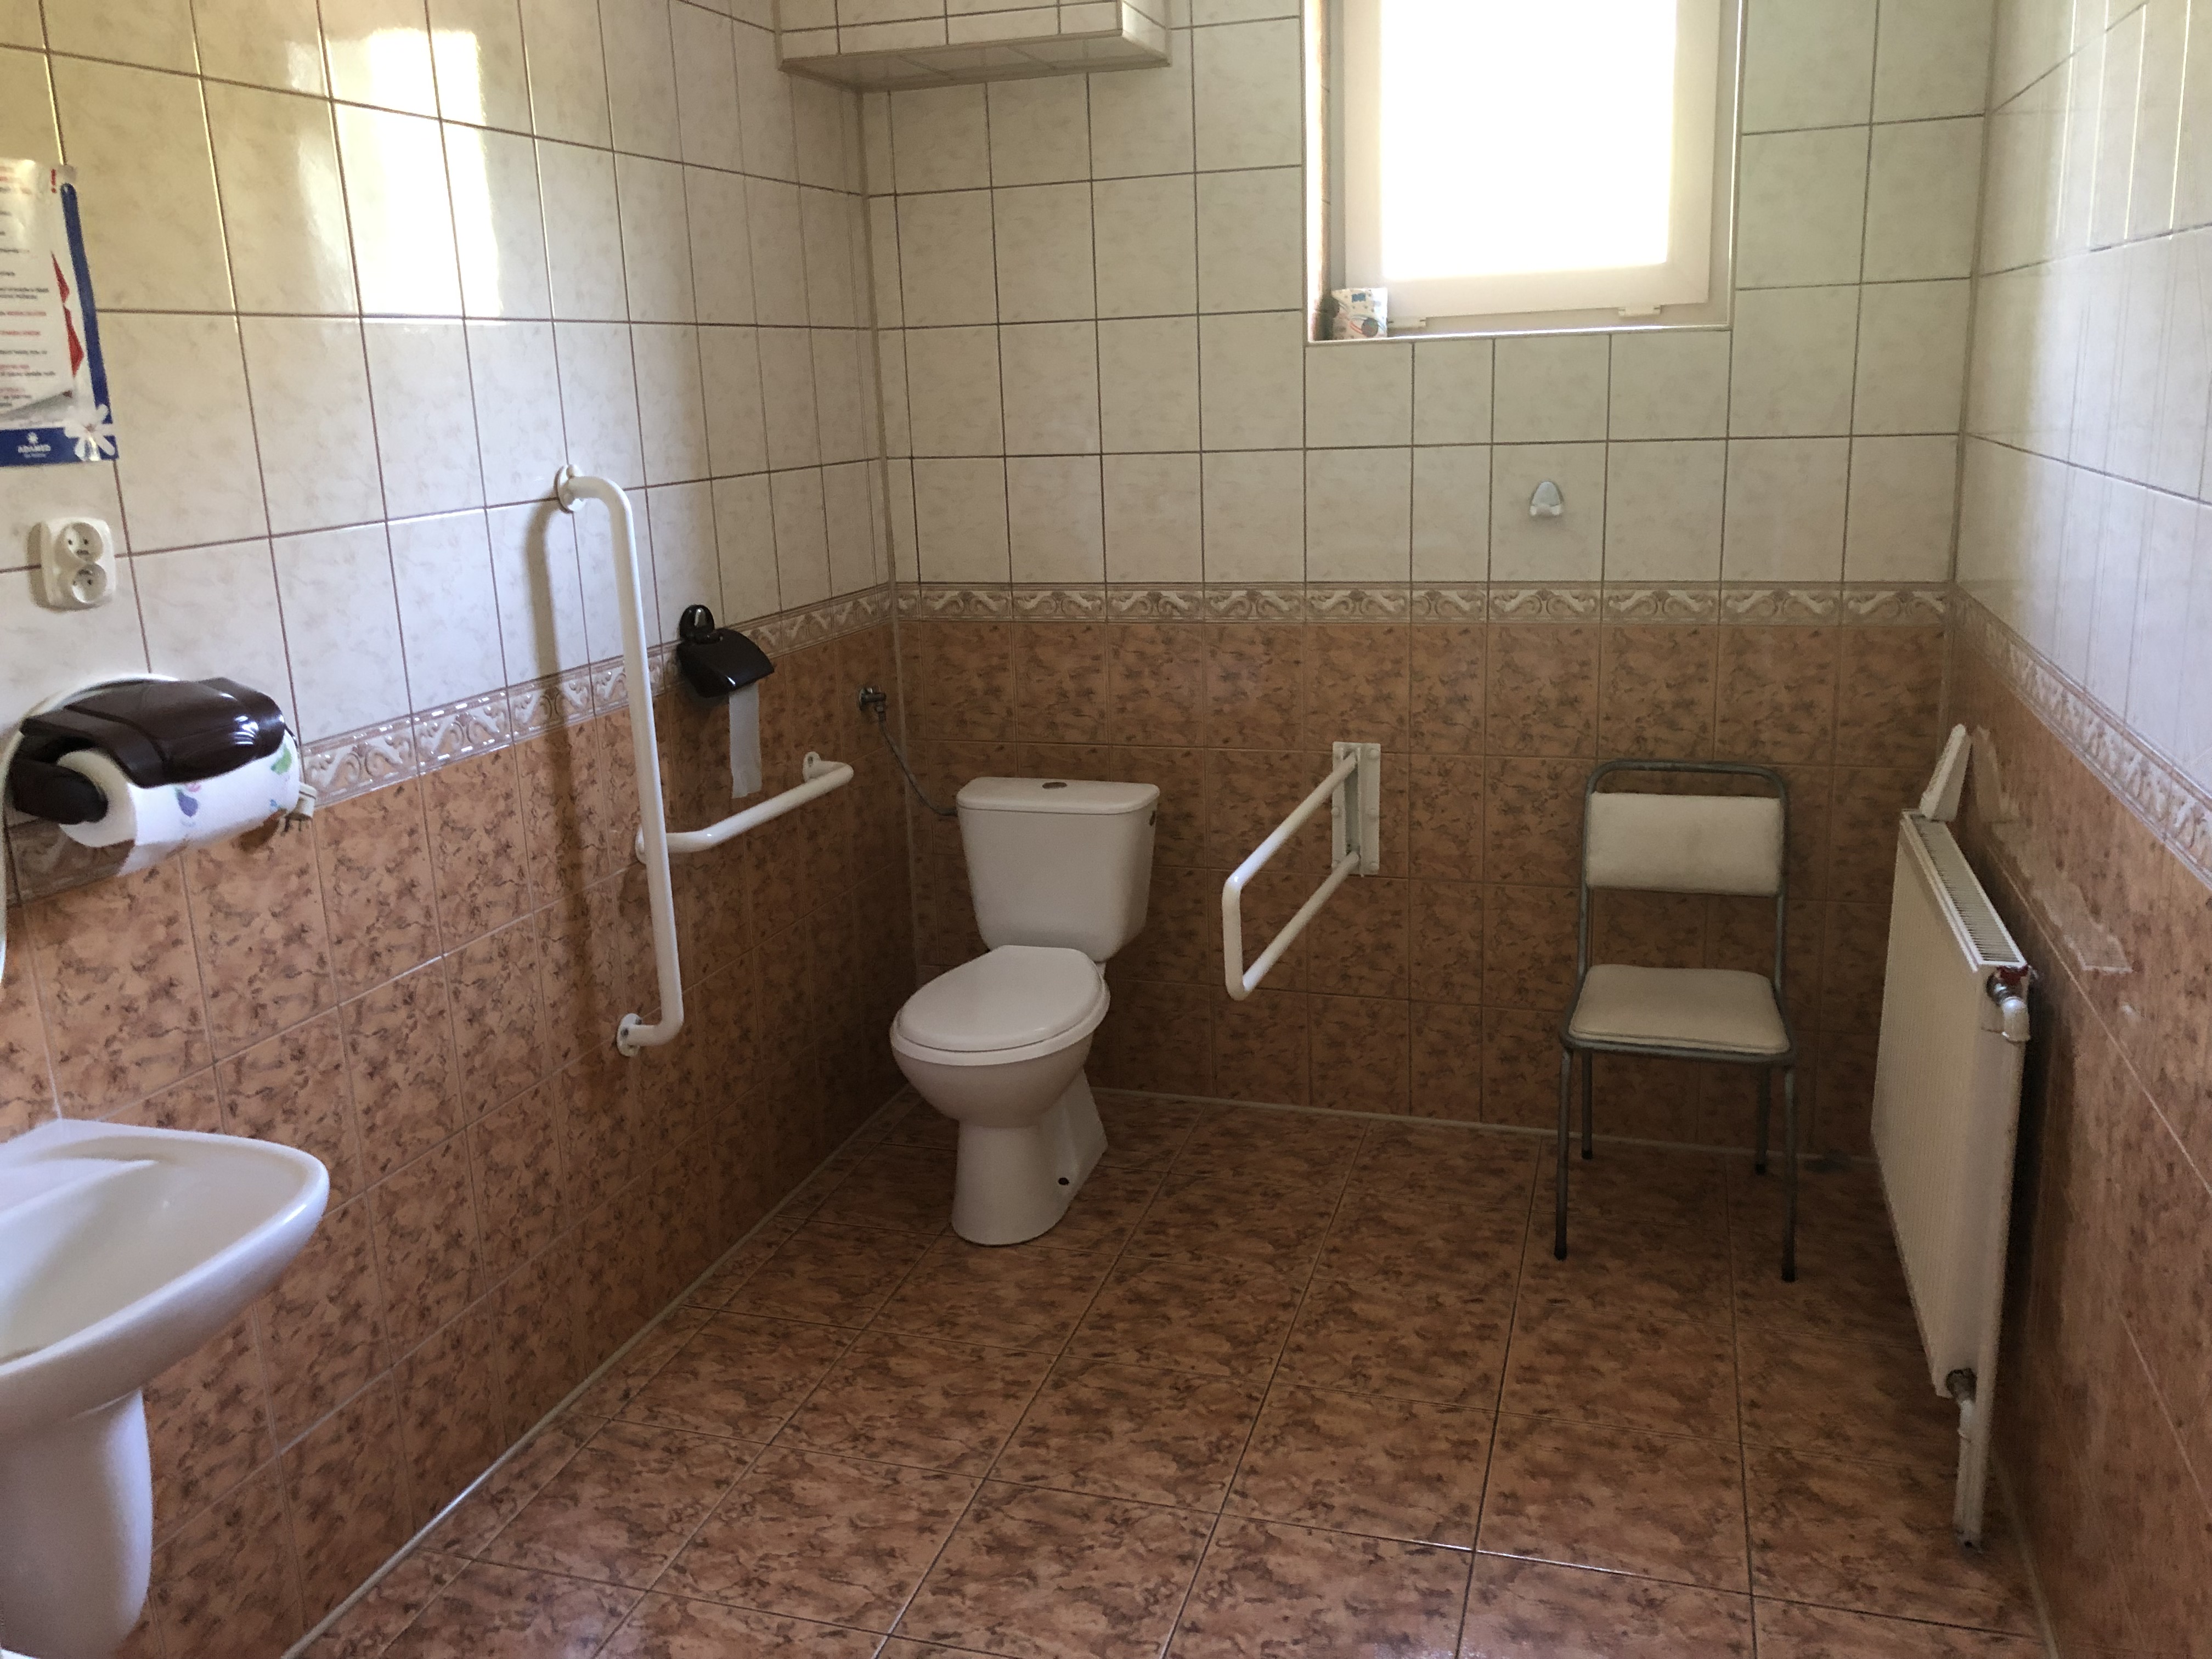 toaleta z uchwytami dla osób z niepełnosprawnościami ruchowymi.